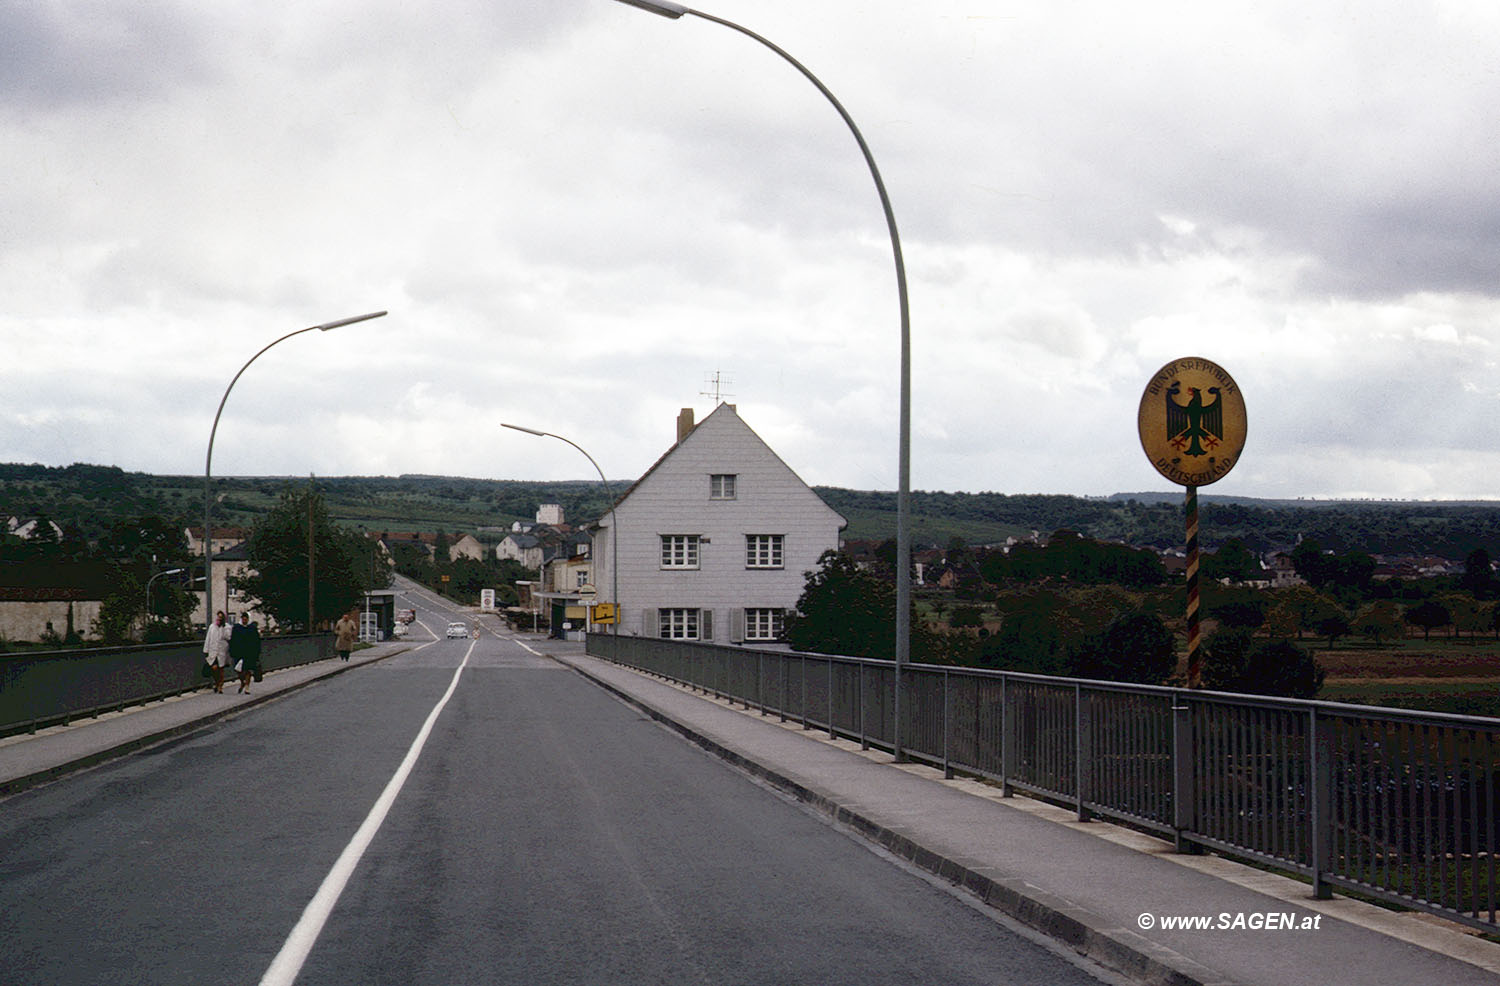 Grenze zu Luxemburg oder Belgien